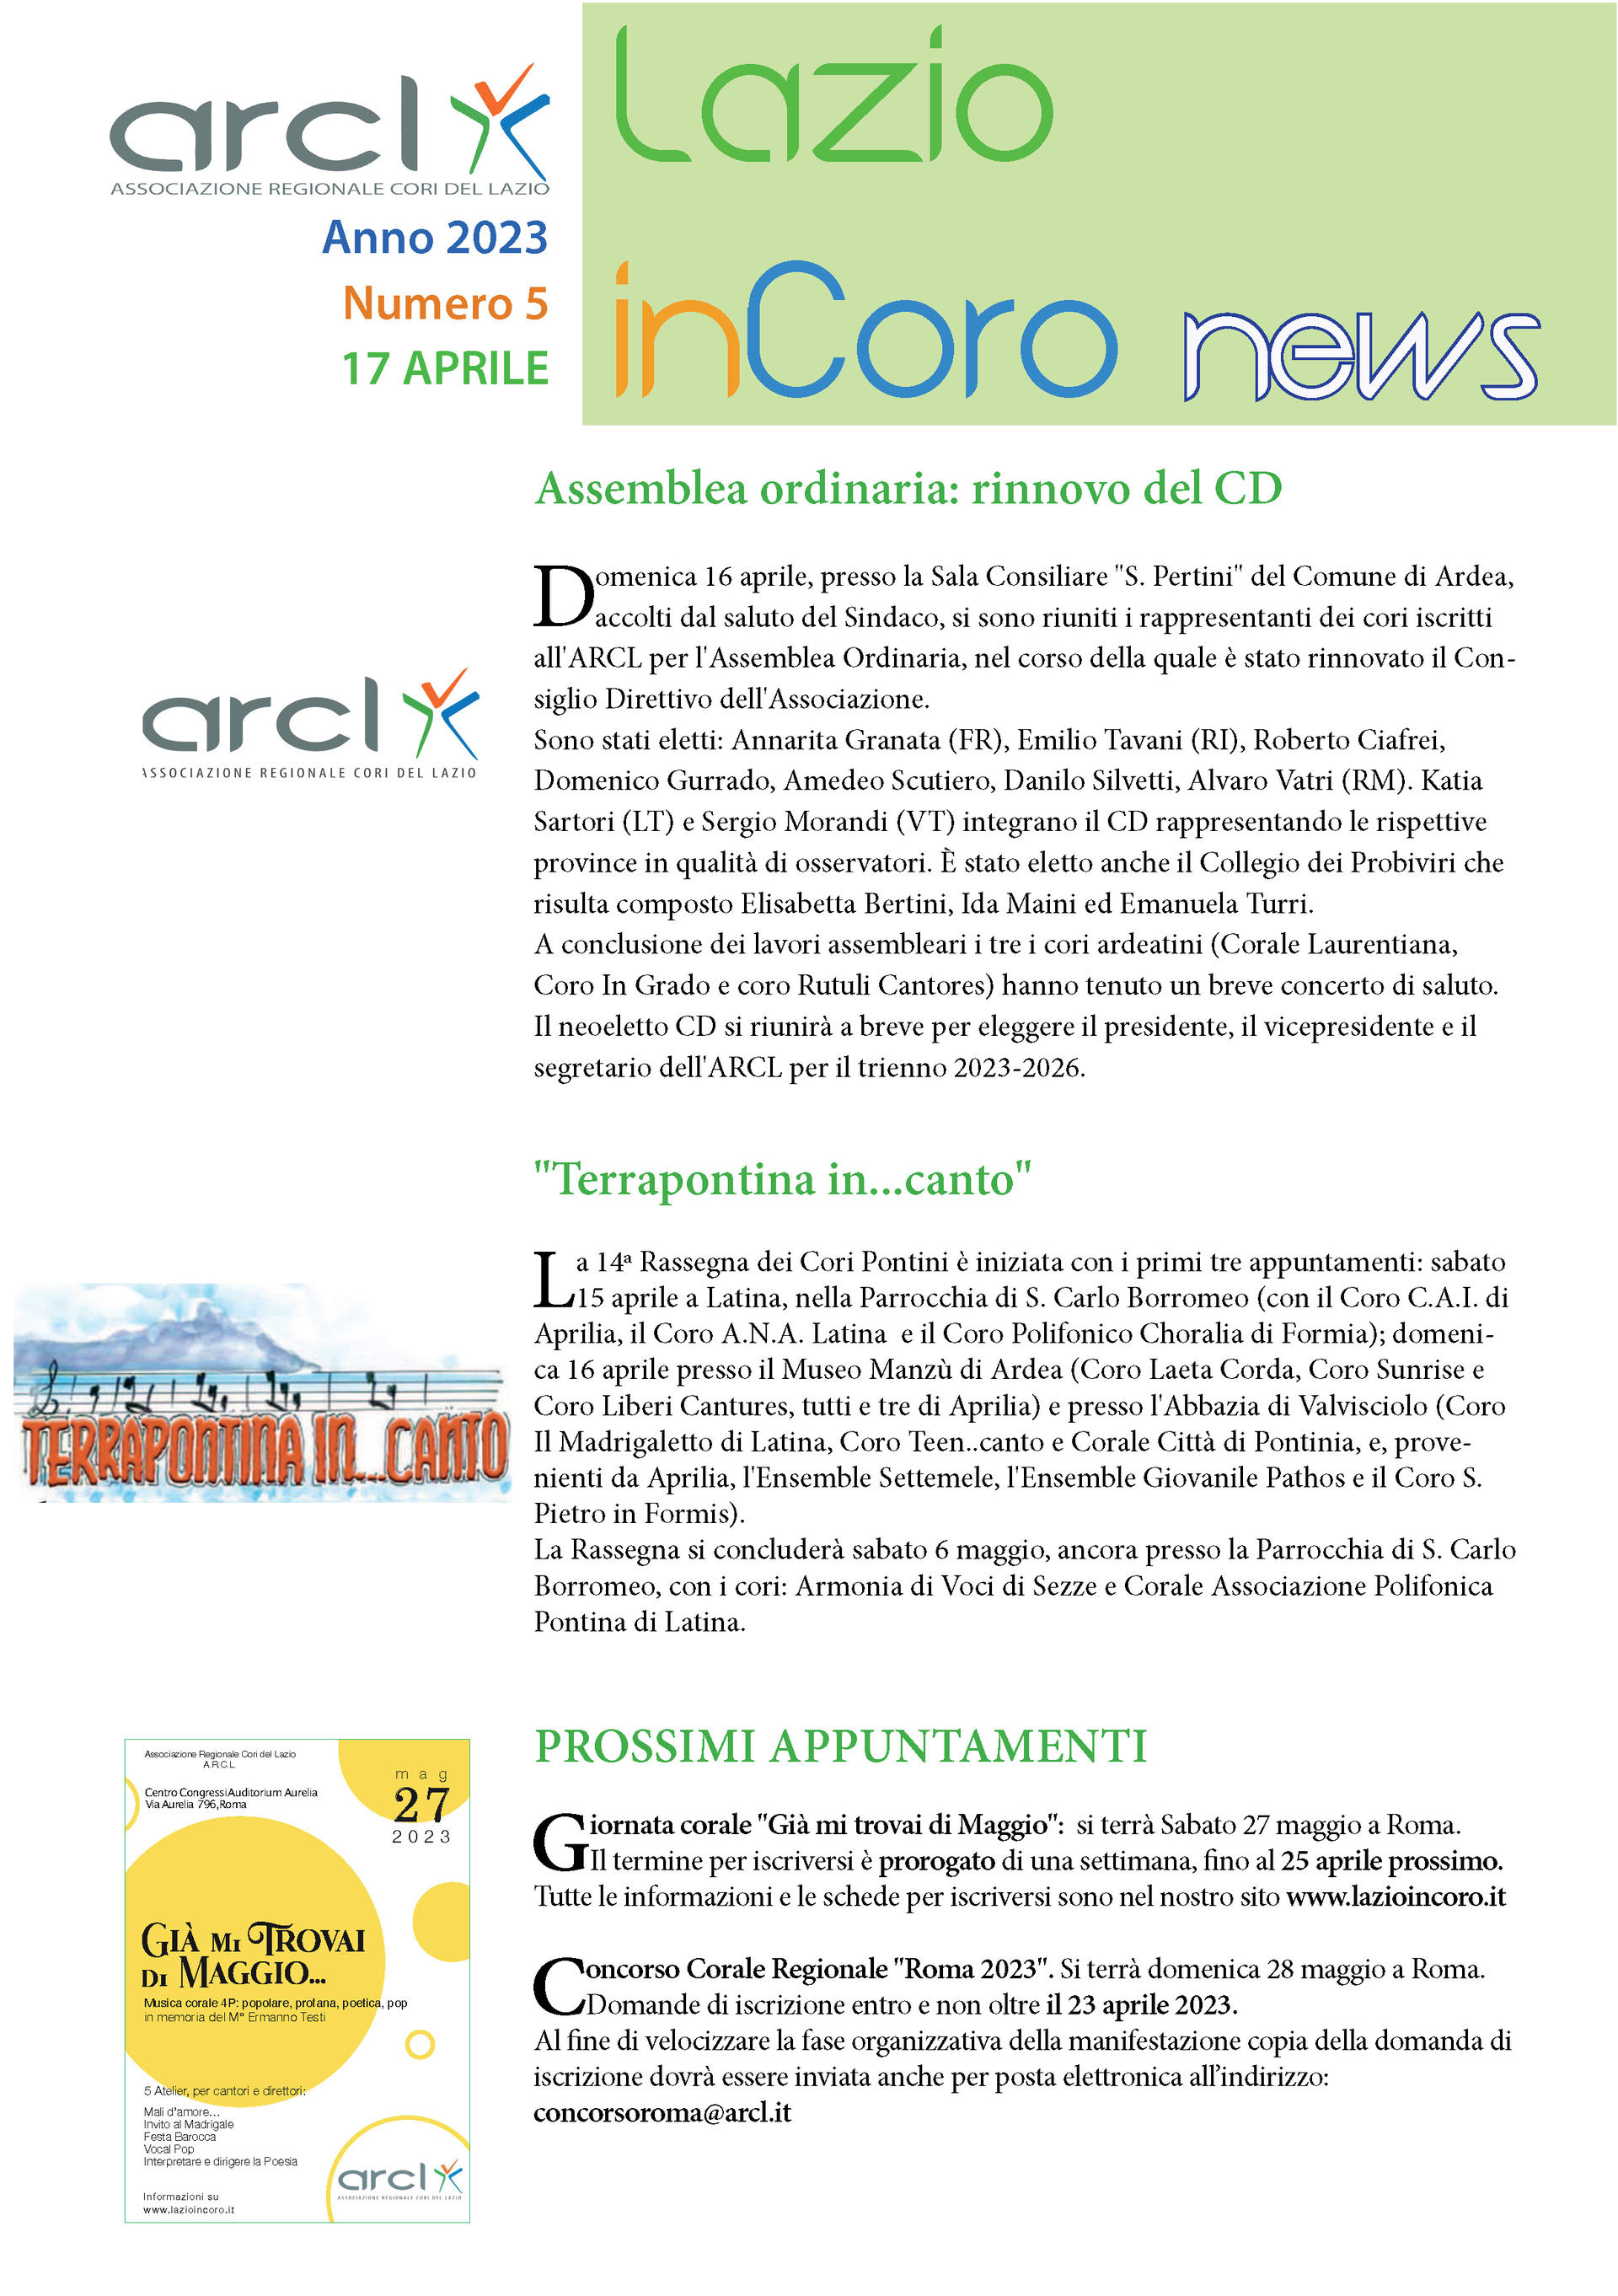 Lazioincoro News n. 5 - 17 aprile 2023